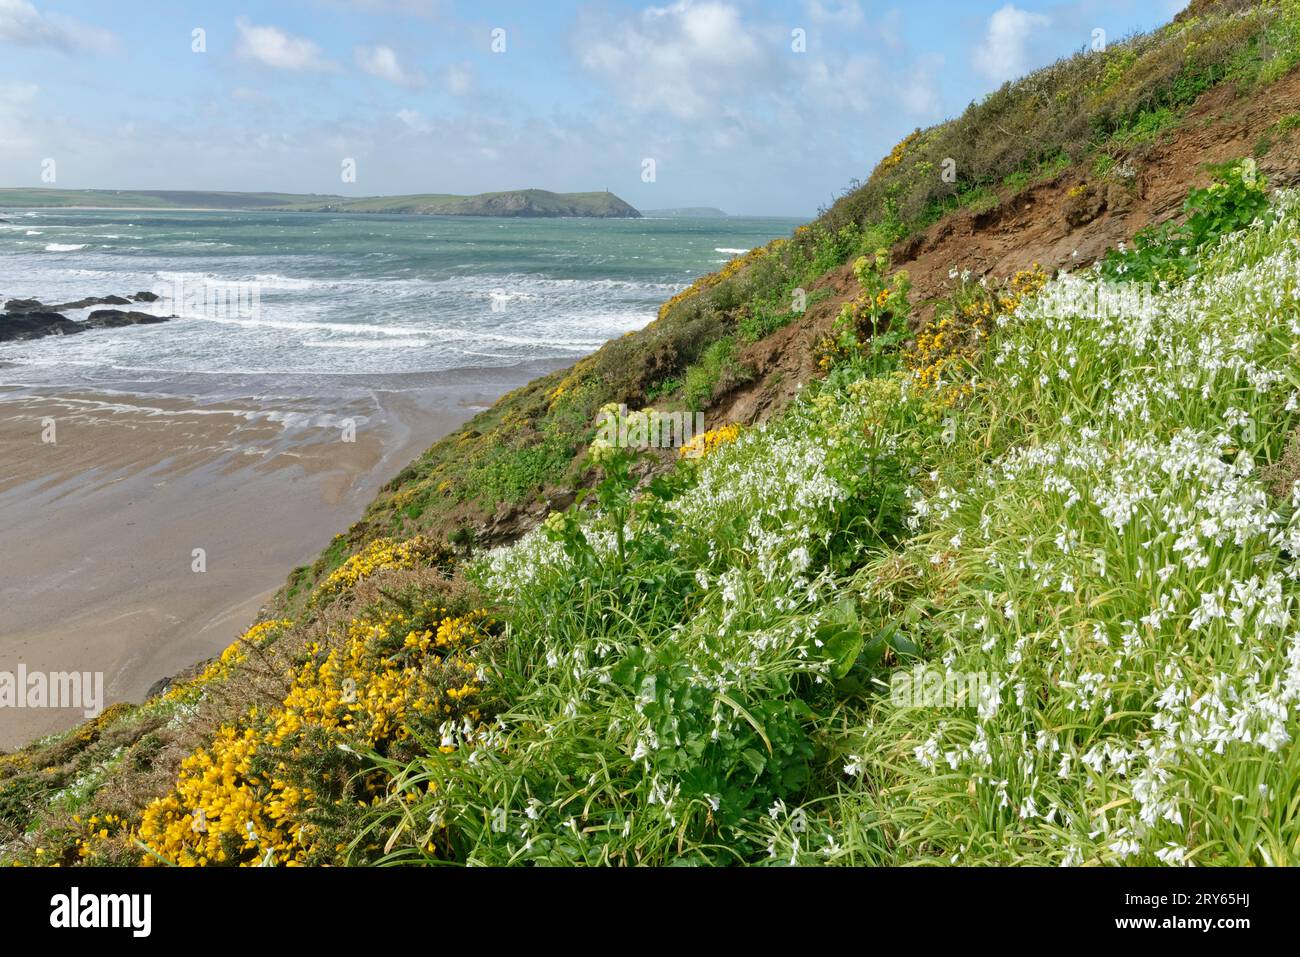 Tre porri d'angolo / tre aglio d'angolo (Allium triquetrum), una specie invasiva nel Regno Unito, che fiorisce in densi grumi su un promontorio costiero Foto Stock